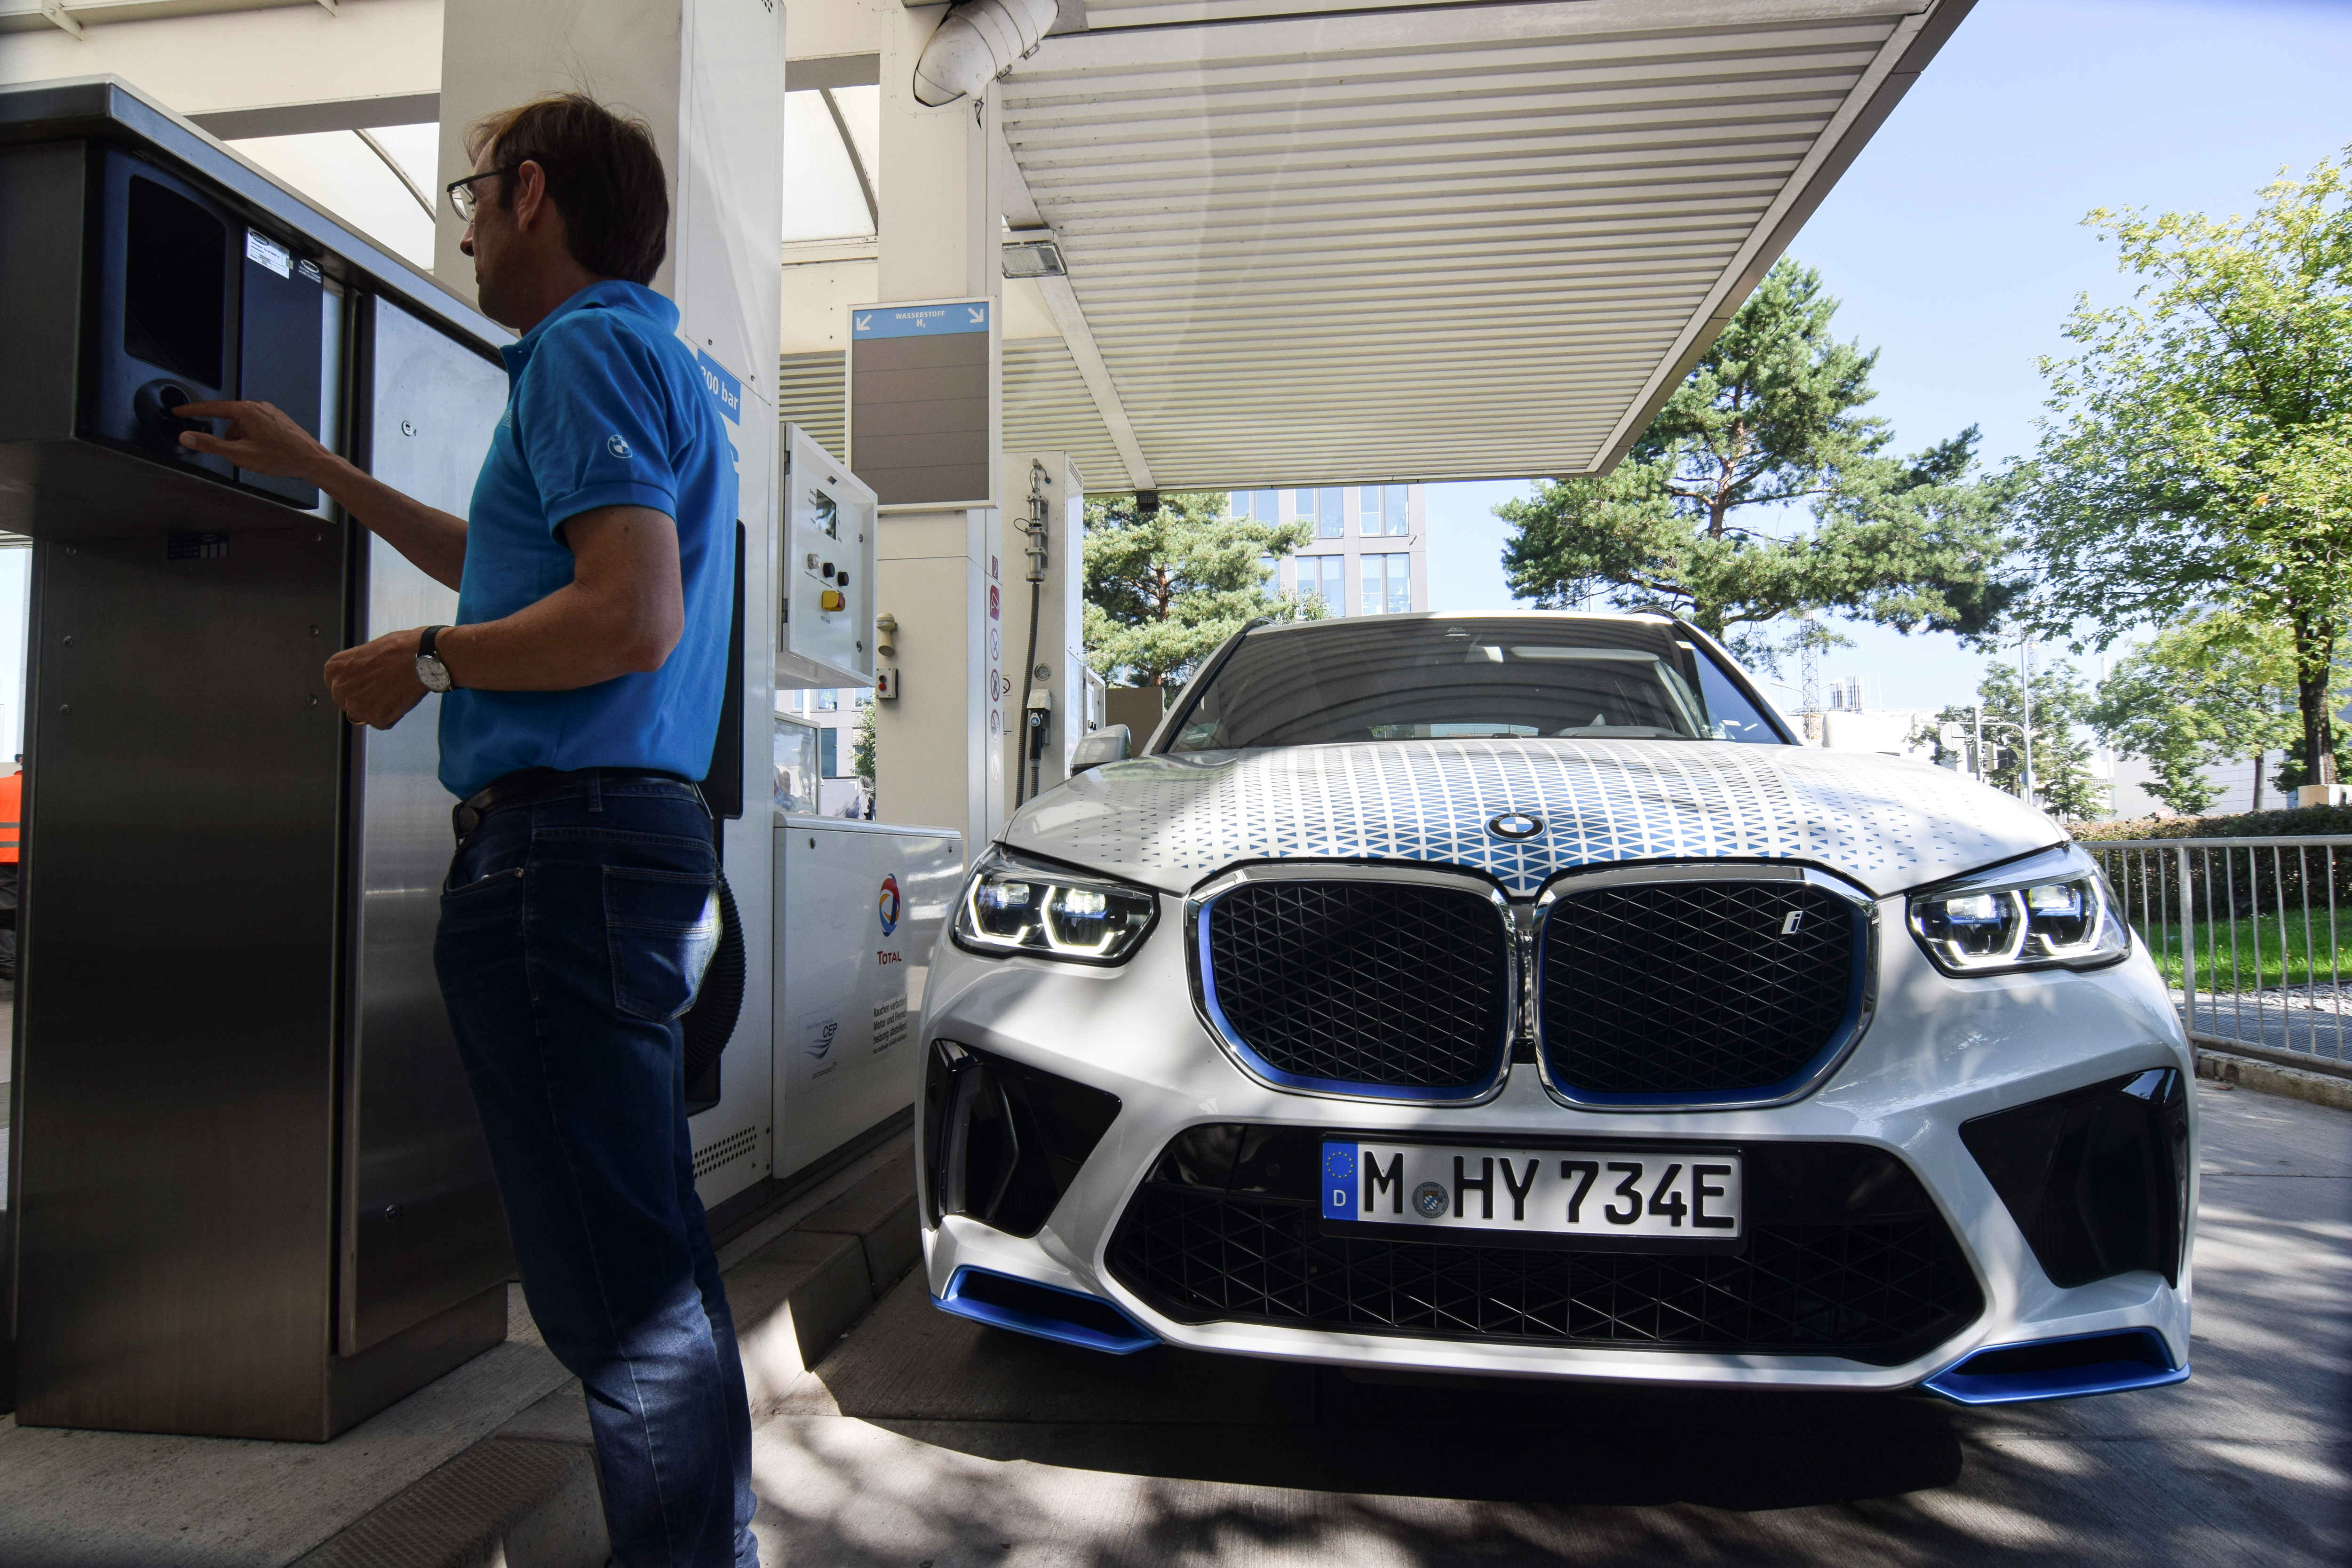 Juergen Guldner, vicepresidente de BMW a cargo del programa de automóviles de hidrógeno del fabricante de automóviles, alimenta un prototipo de SUV con celda de combustible de hidrógeno en una gasolinera en Munich, Alemania, el 3 de septiembre de 2021. Fotografía tomada el 3 de septiembre de 2021. REUTERS / Nick Carey